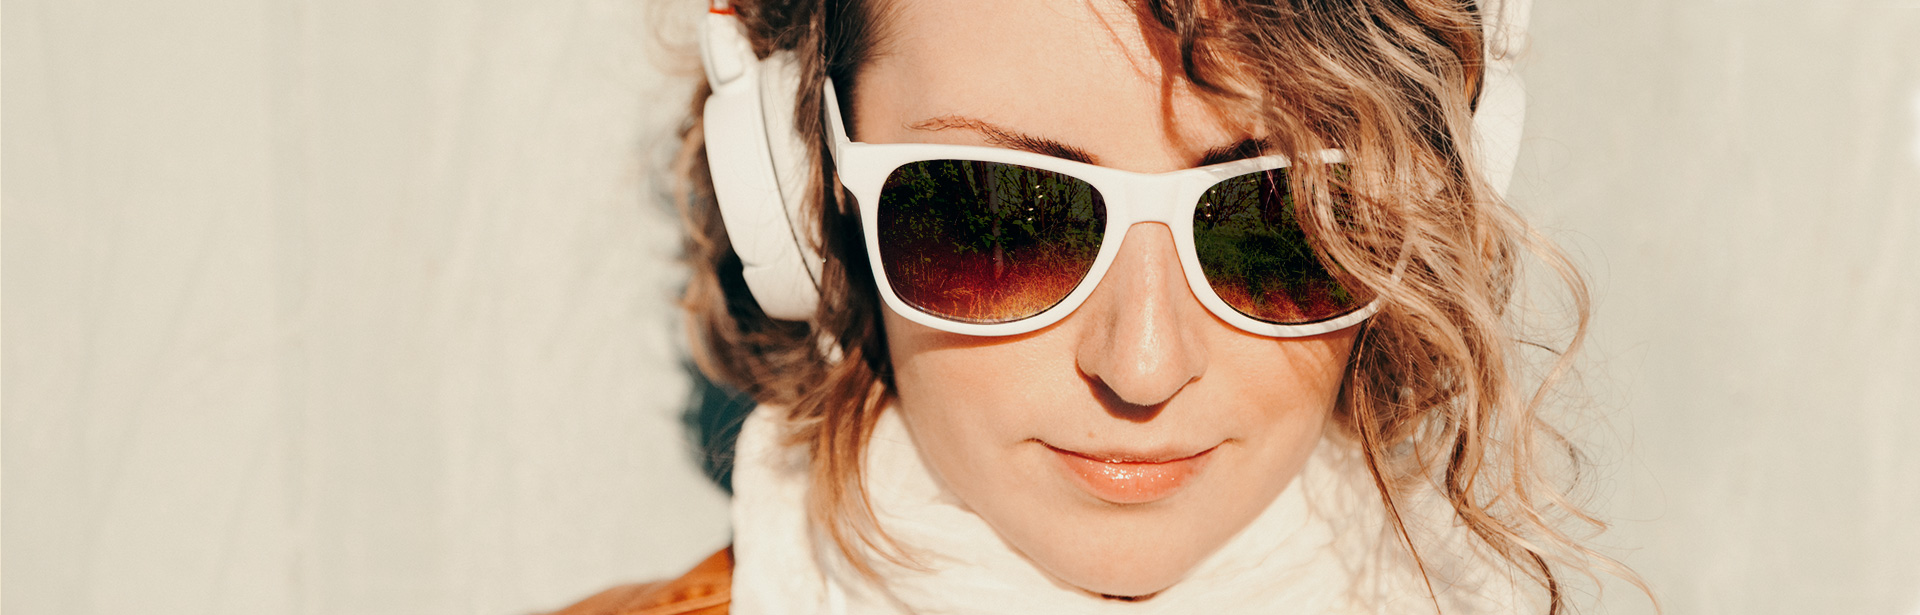 Eine Frau hört den DEW21 Podcast über ihre Kopfhörer.